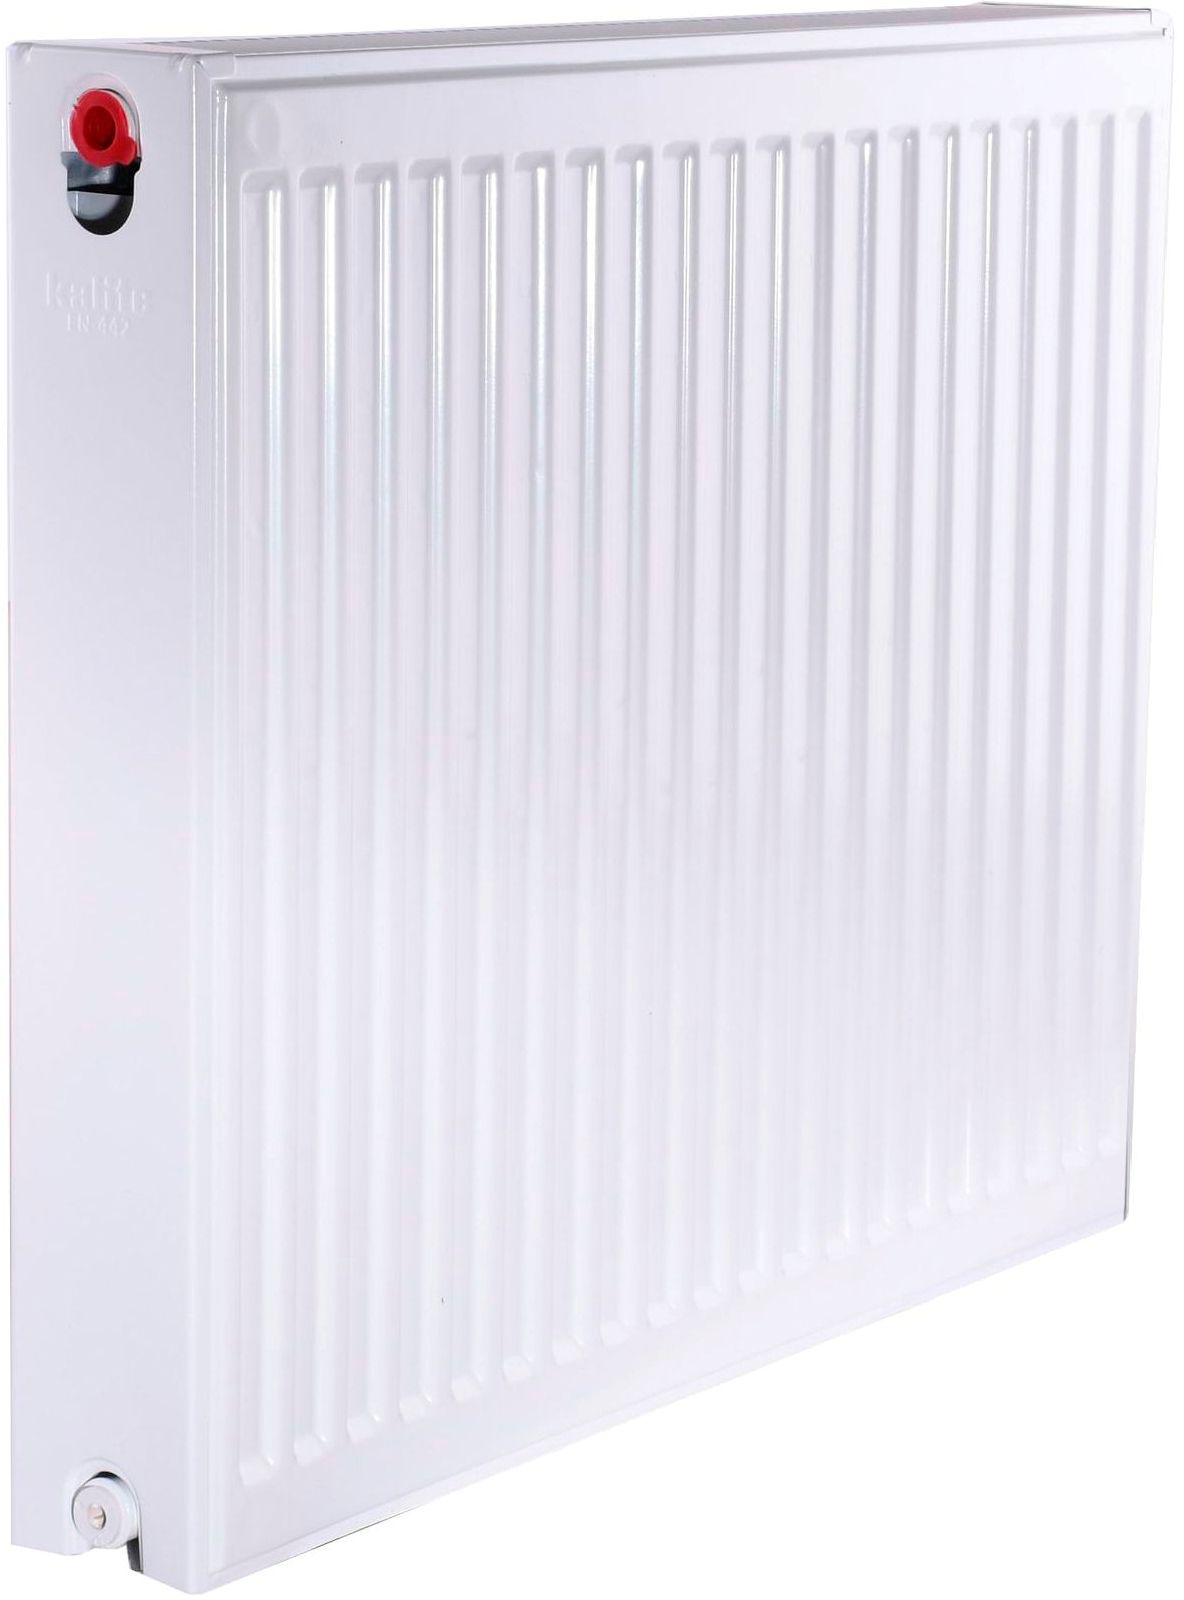 Радиатор для отопления Kalite 22 бок 600x700 в интернет-магазине, главное фото